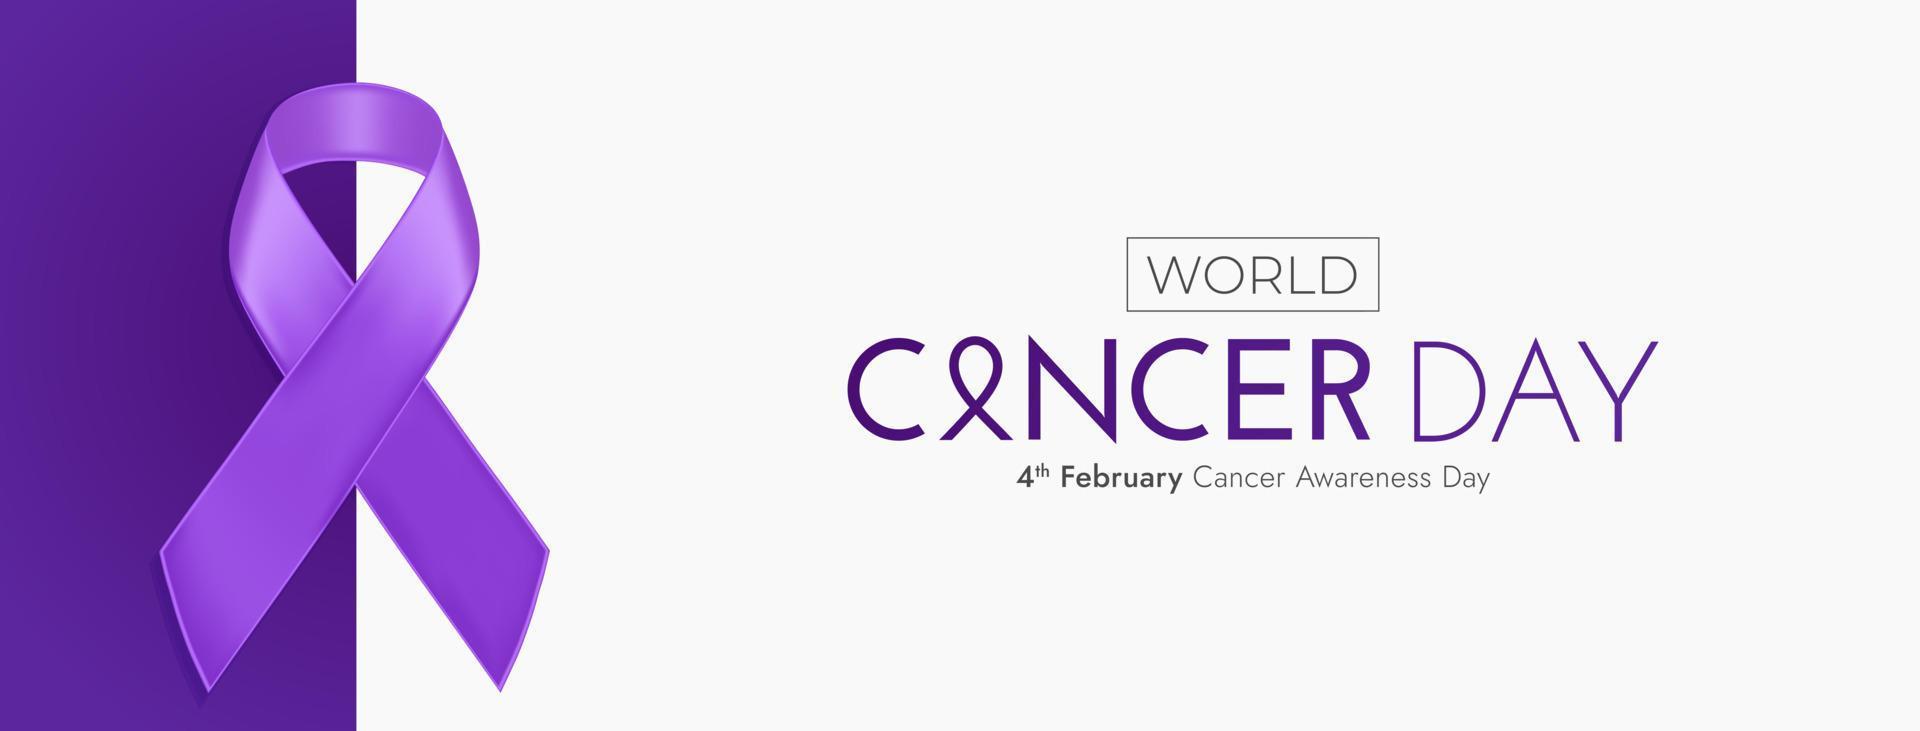 publicación en redes sociales del 4 de febrero del día mundial contra el cáncer vector